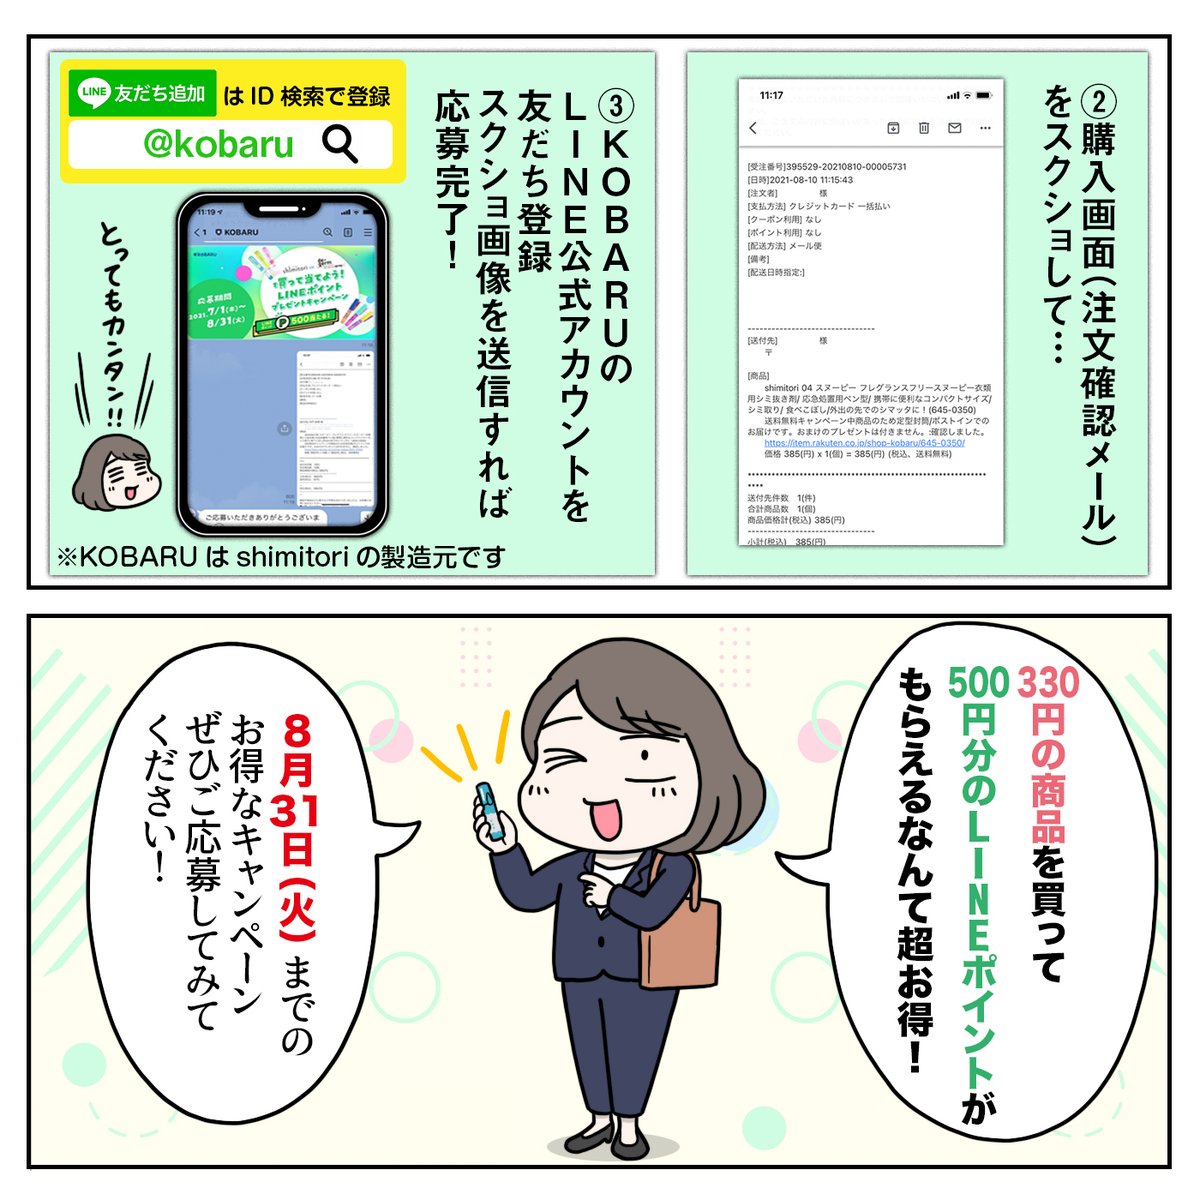 【キャンペーン詳細】
#shimitori(330円相当)をご購入されると
抽選で1,000名様にLINEポイント500Pが当たるそうです(かなり大盤振る舞いなキャンペーン!)
ポイントはLINEスタンプやLINE Payで使えますし
応募方法も、LINEに購入画面を送るだけと簡単です!(2/2)
https://t.co/MkfJPbOF5d 